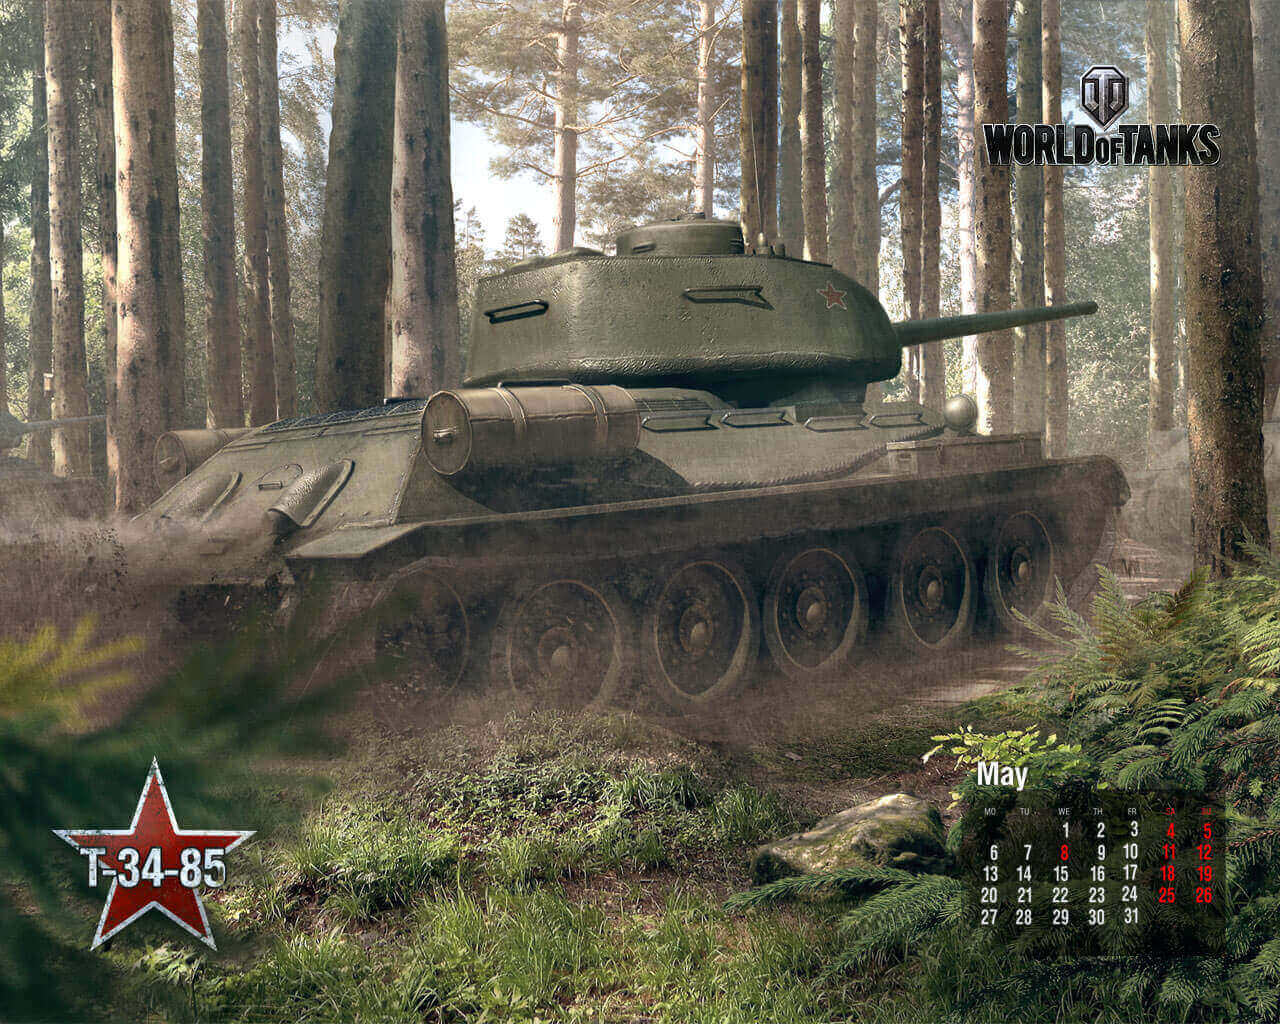 May 2013 Calendar: T-34-85